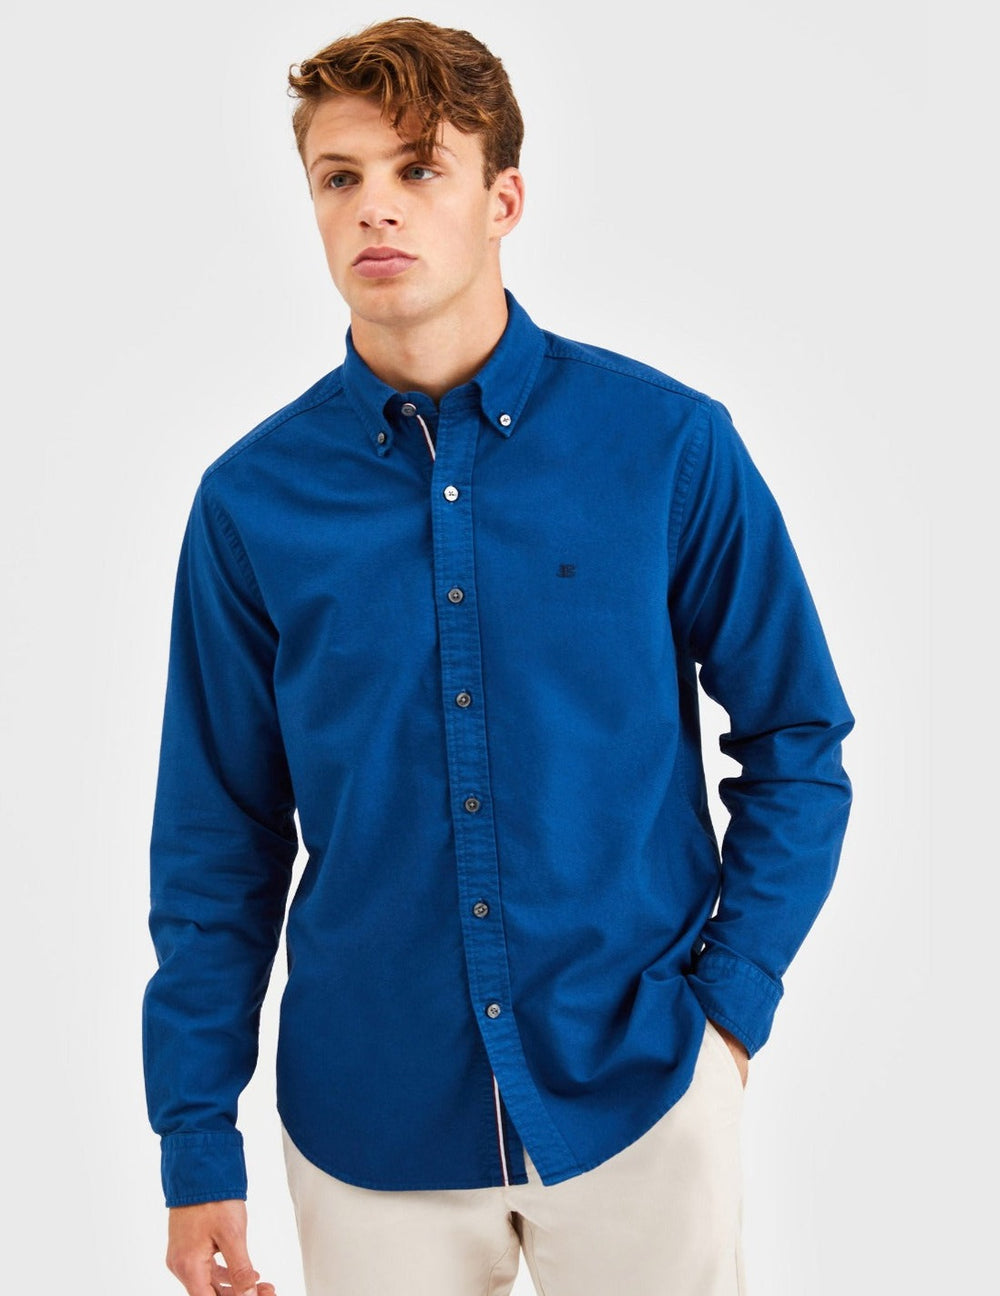 Beatnik Oxford Garment Dye Shirt - Cool Indigo - Ben Sherman